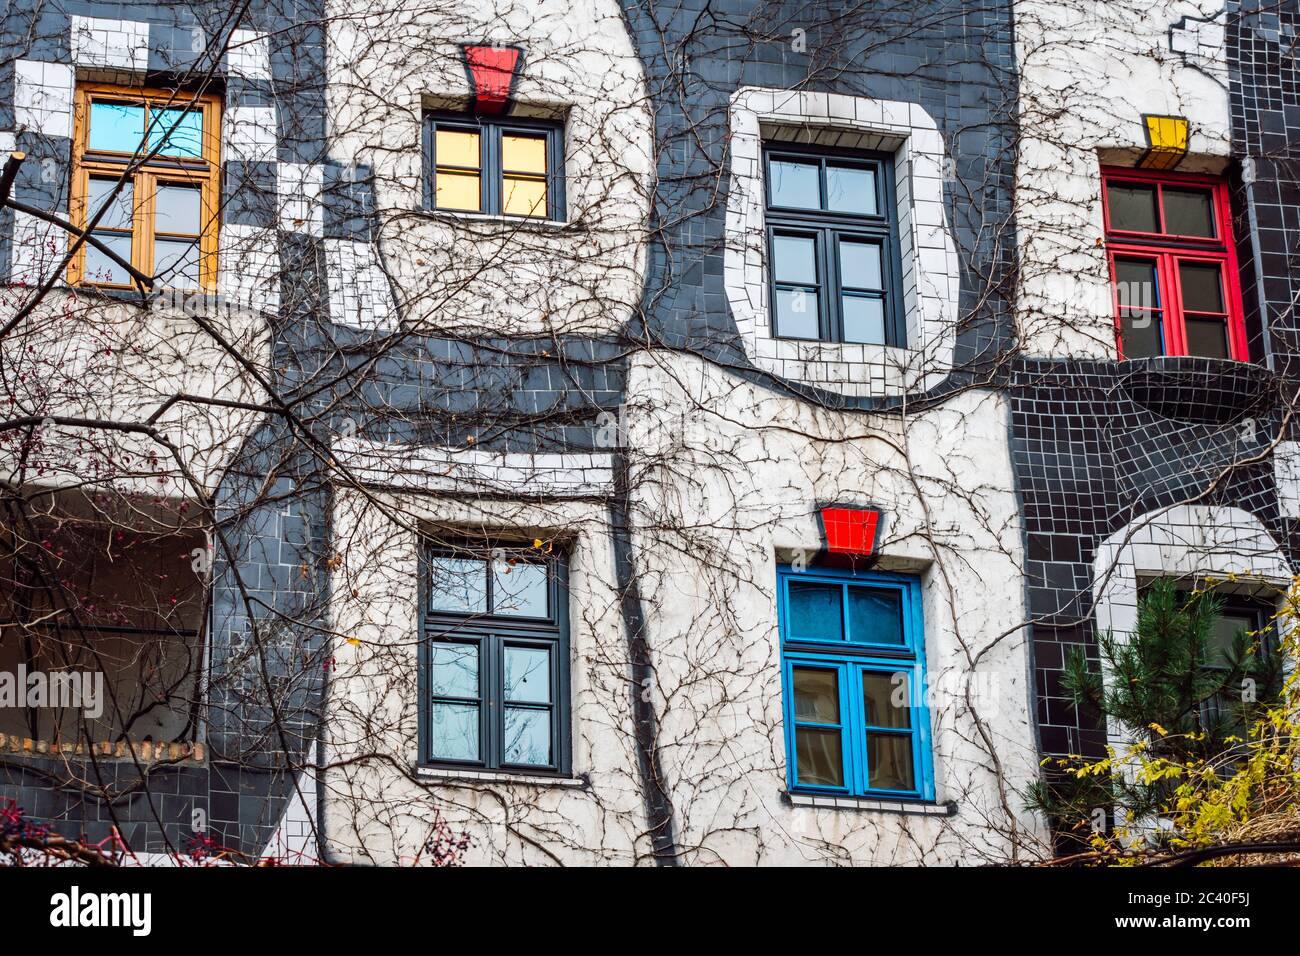 Le musée Hundertwasser ( Kunst Haus Wien ) abrite une collection d'œuvres de l'artiste viennoise Freidrich Hundertwasser, qui a conçu l'emblématique Banque D'Images